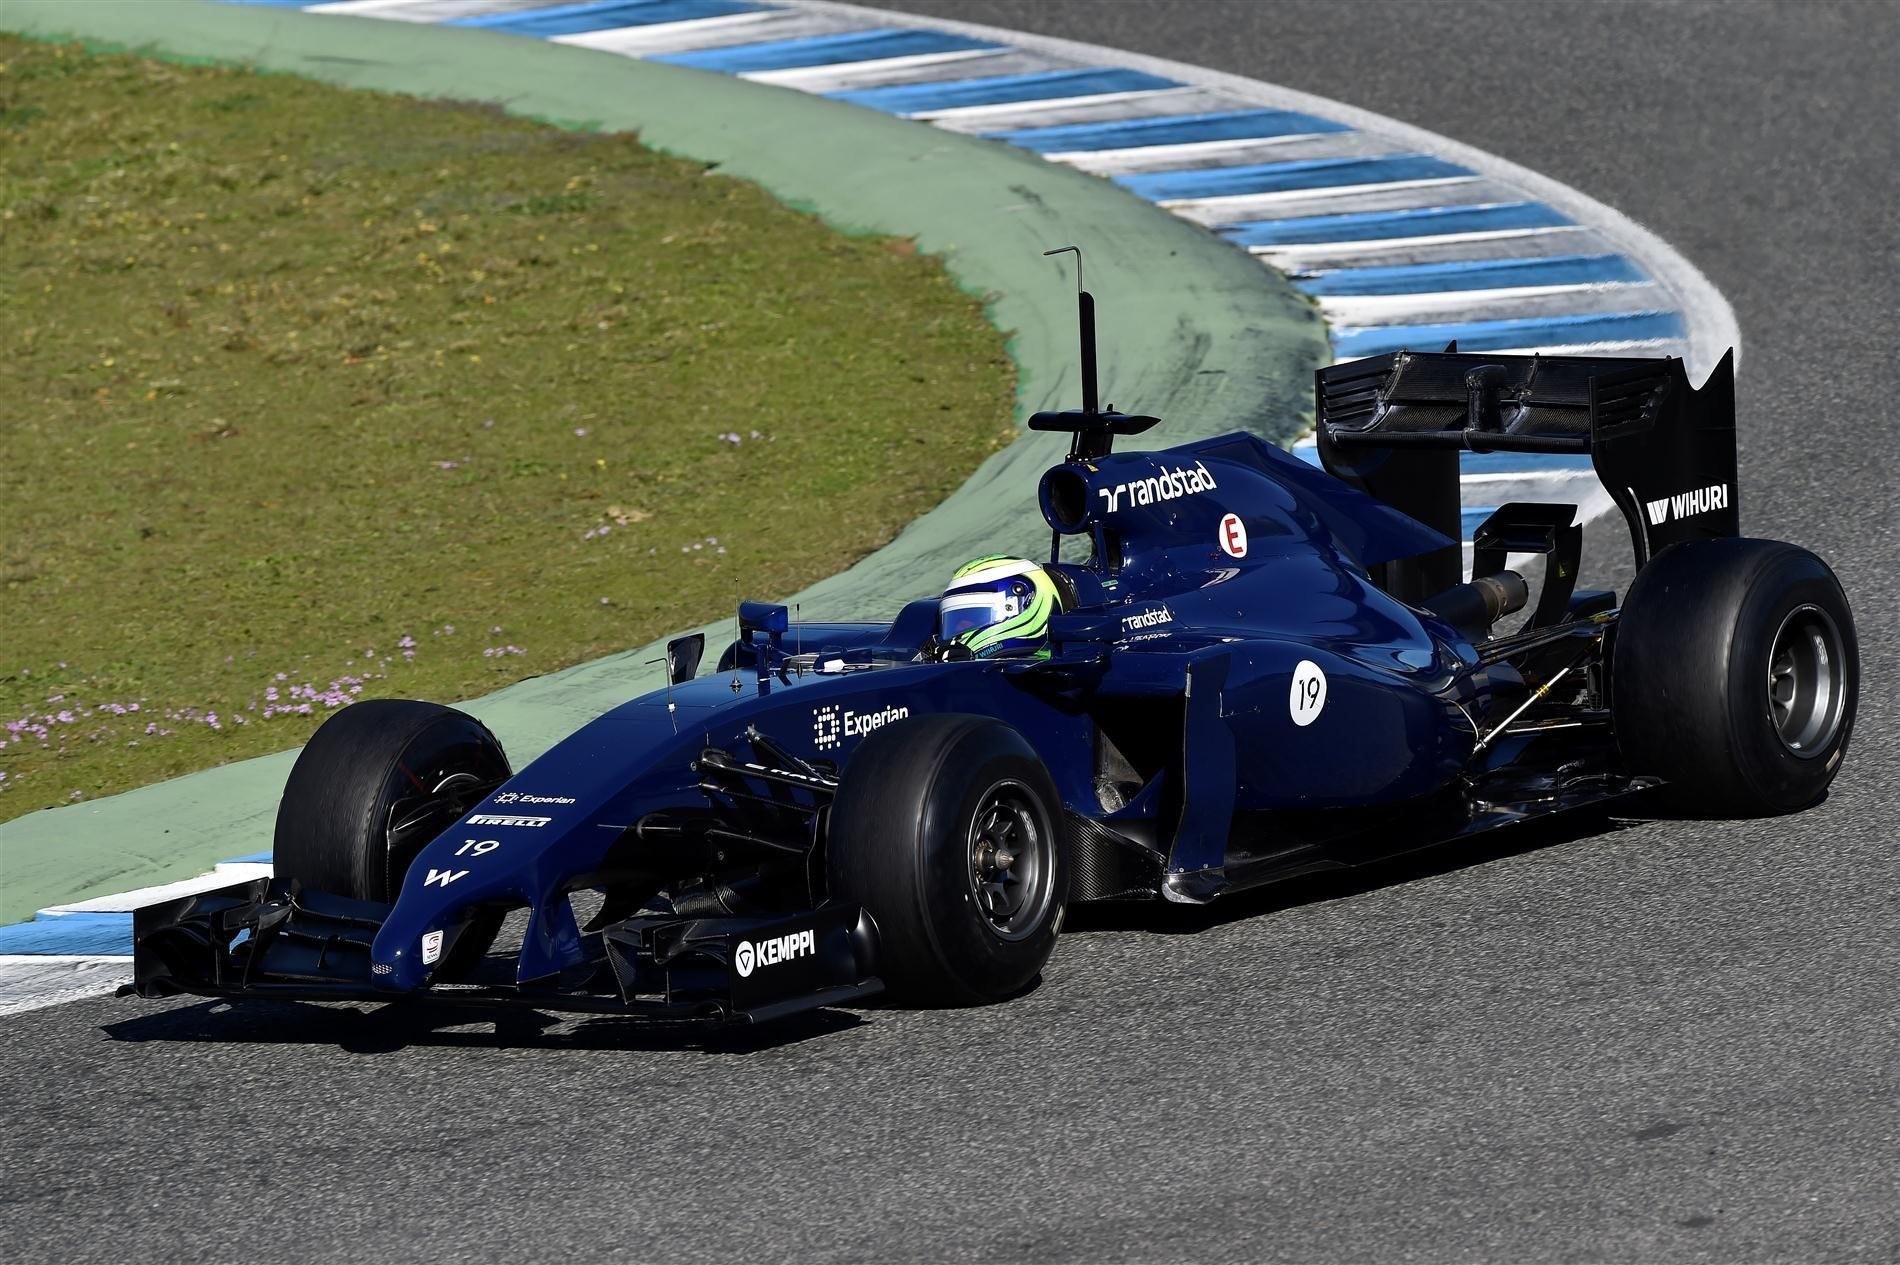 O Motor Mercedes da boas esperanças para a Williams onde Felipe Massa andou bem durante 2 dias e ficou em 2ºlugar nos Tempos agregados.